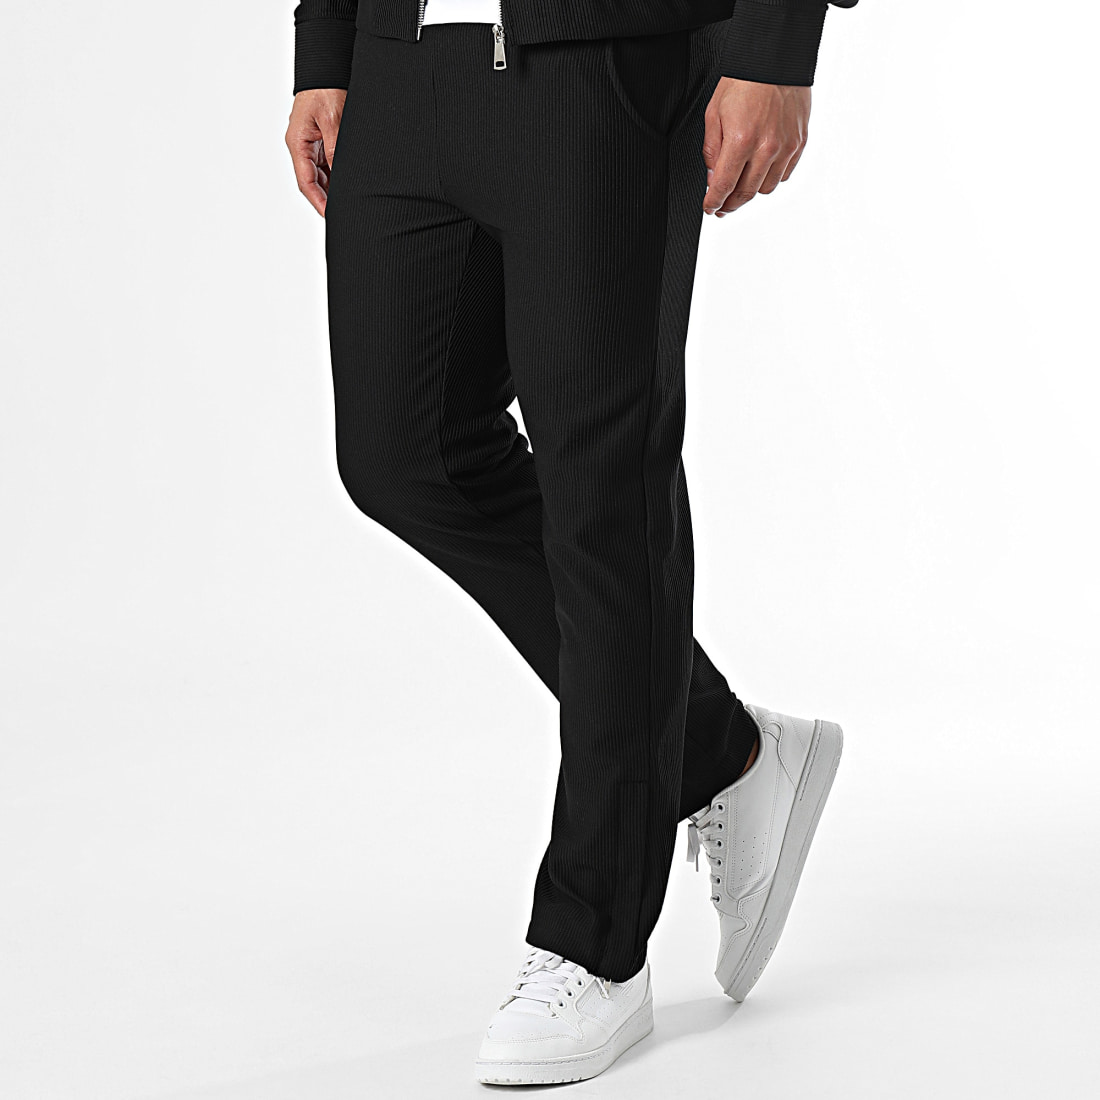 Ensemble veste et pantalon noir homme fashion – ILANNFIVE